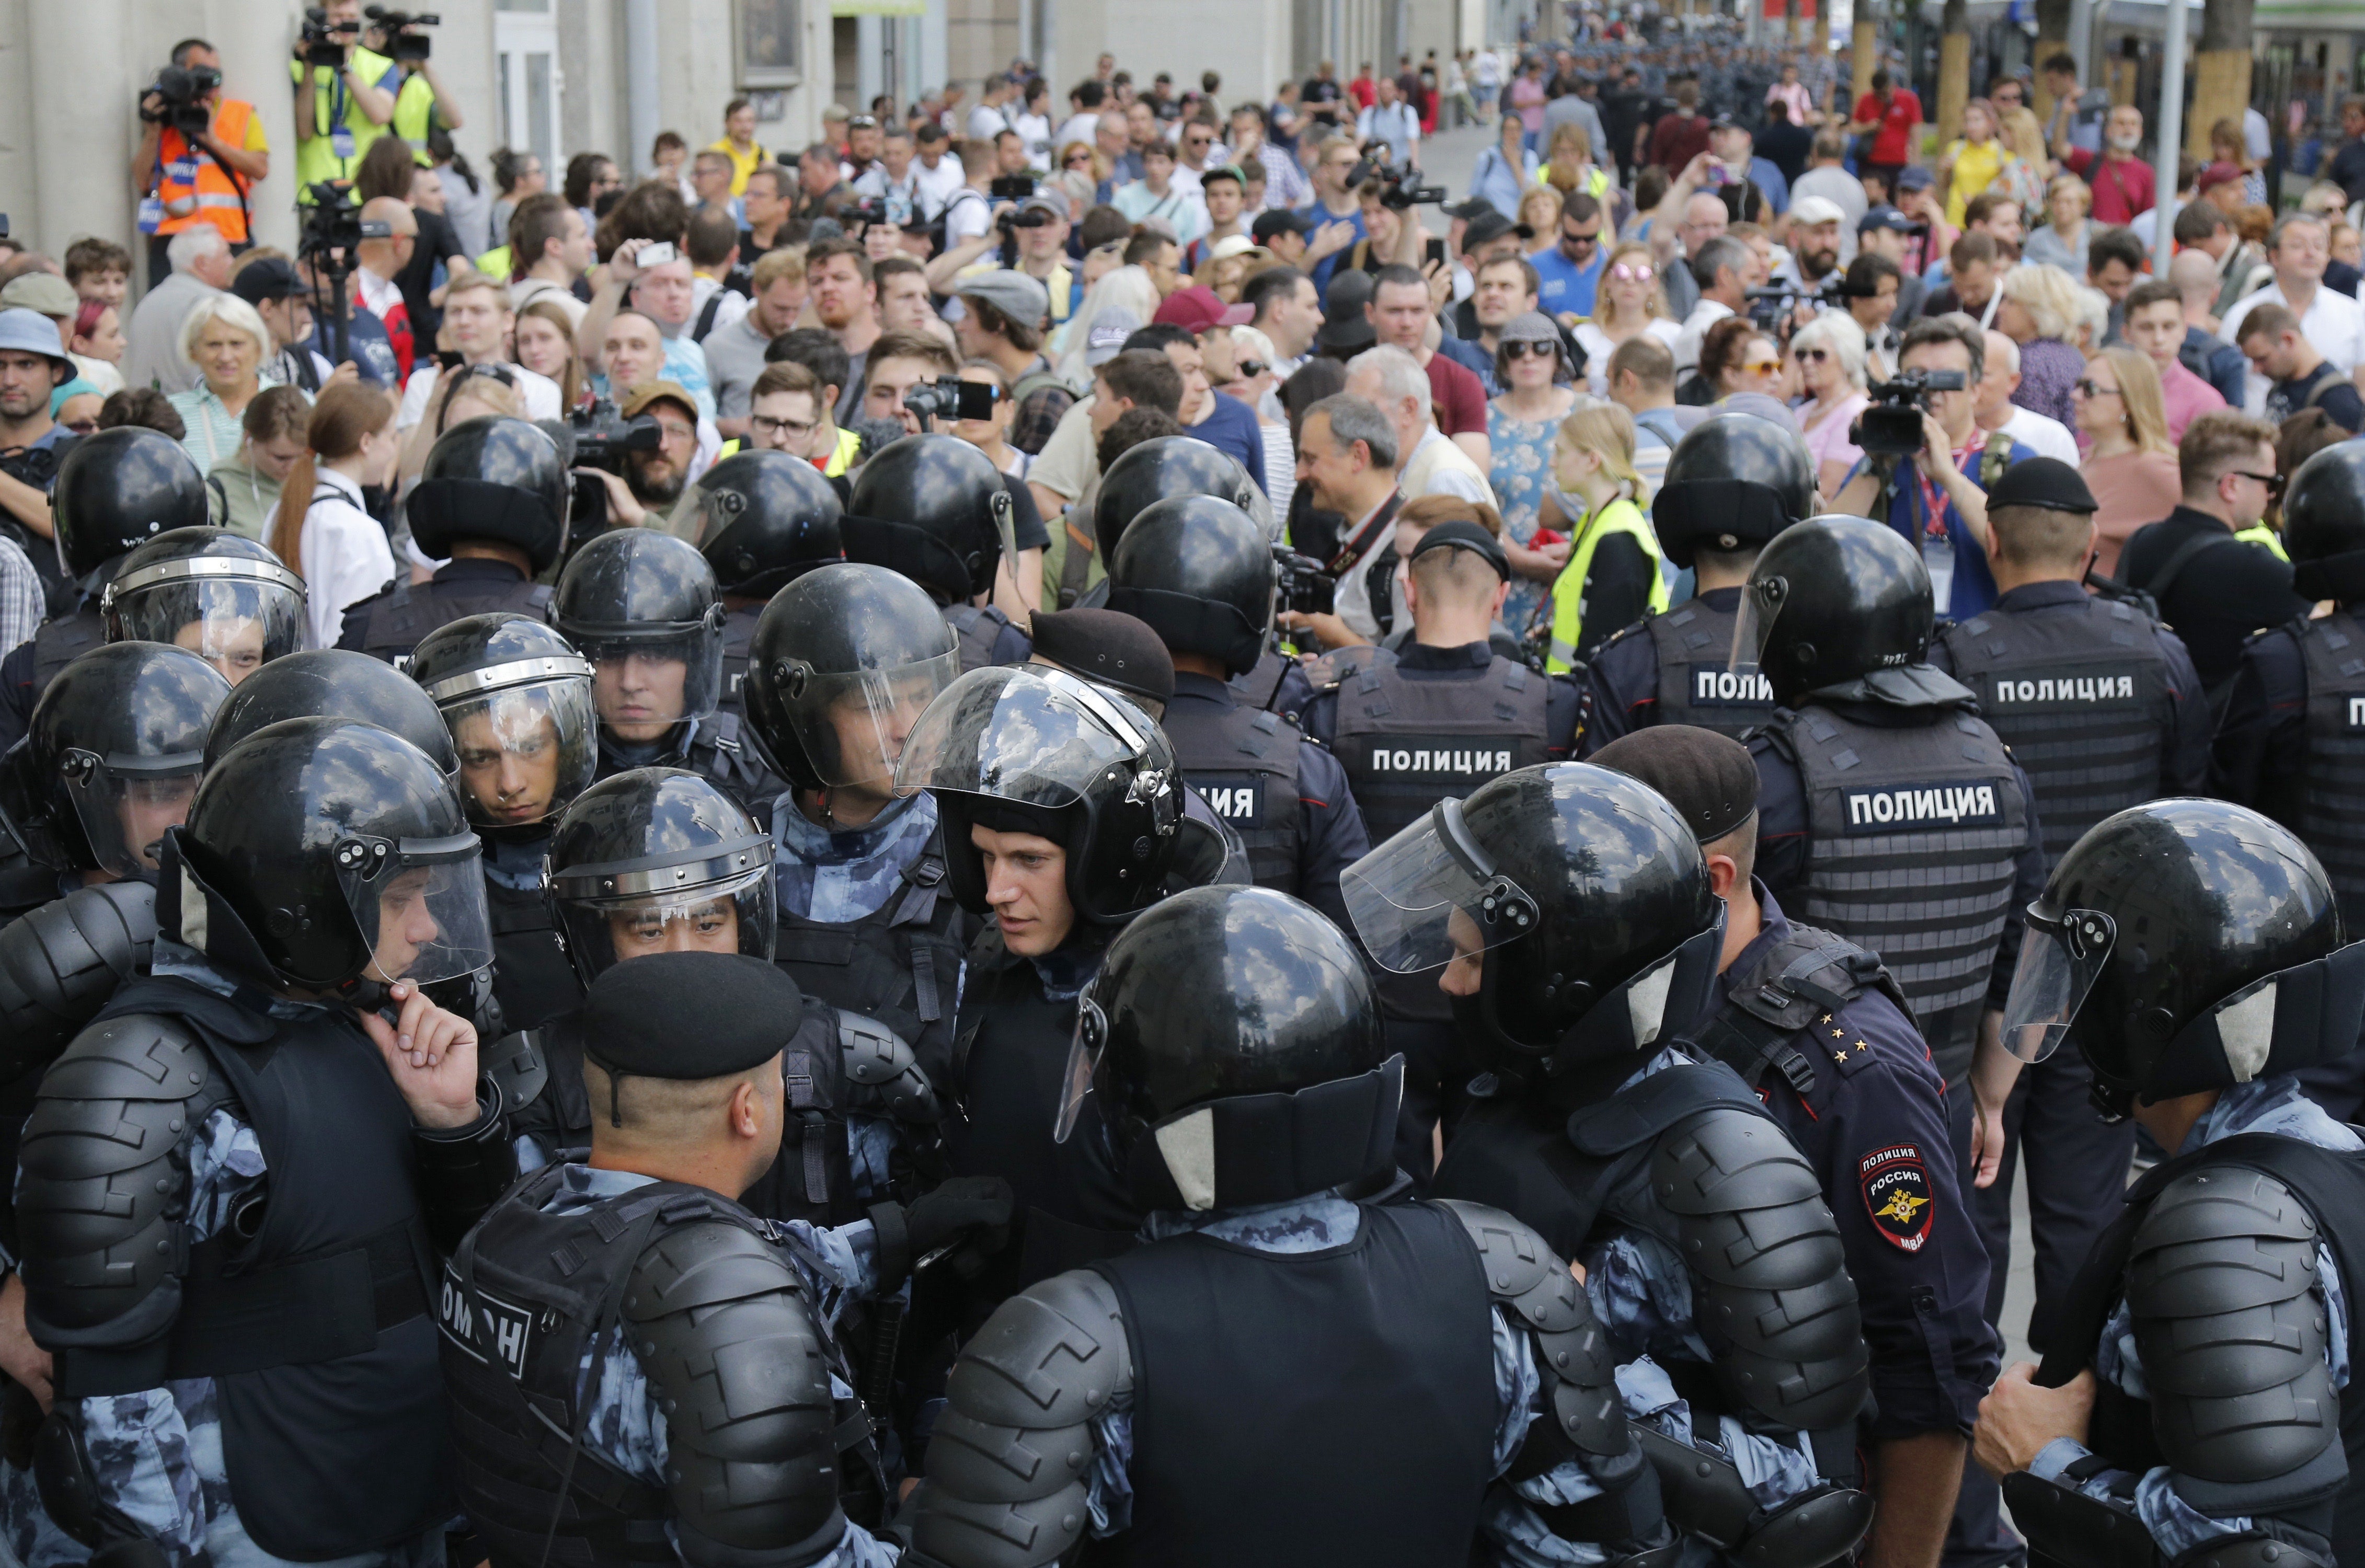 Митинг беспорядки. Полиция в Москве разгоняет демонстрантов. Митинг в Москве 27 июля 2019 ОМОН. Толпа полиции.